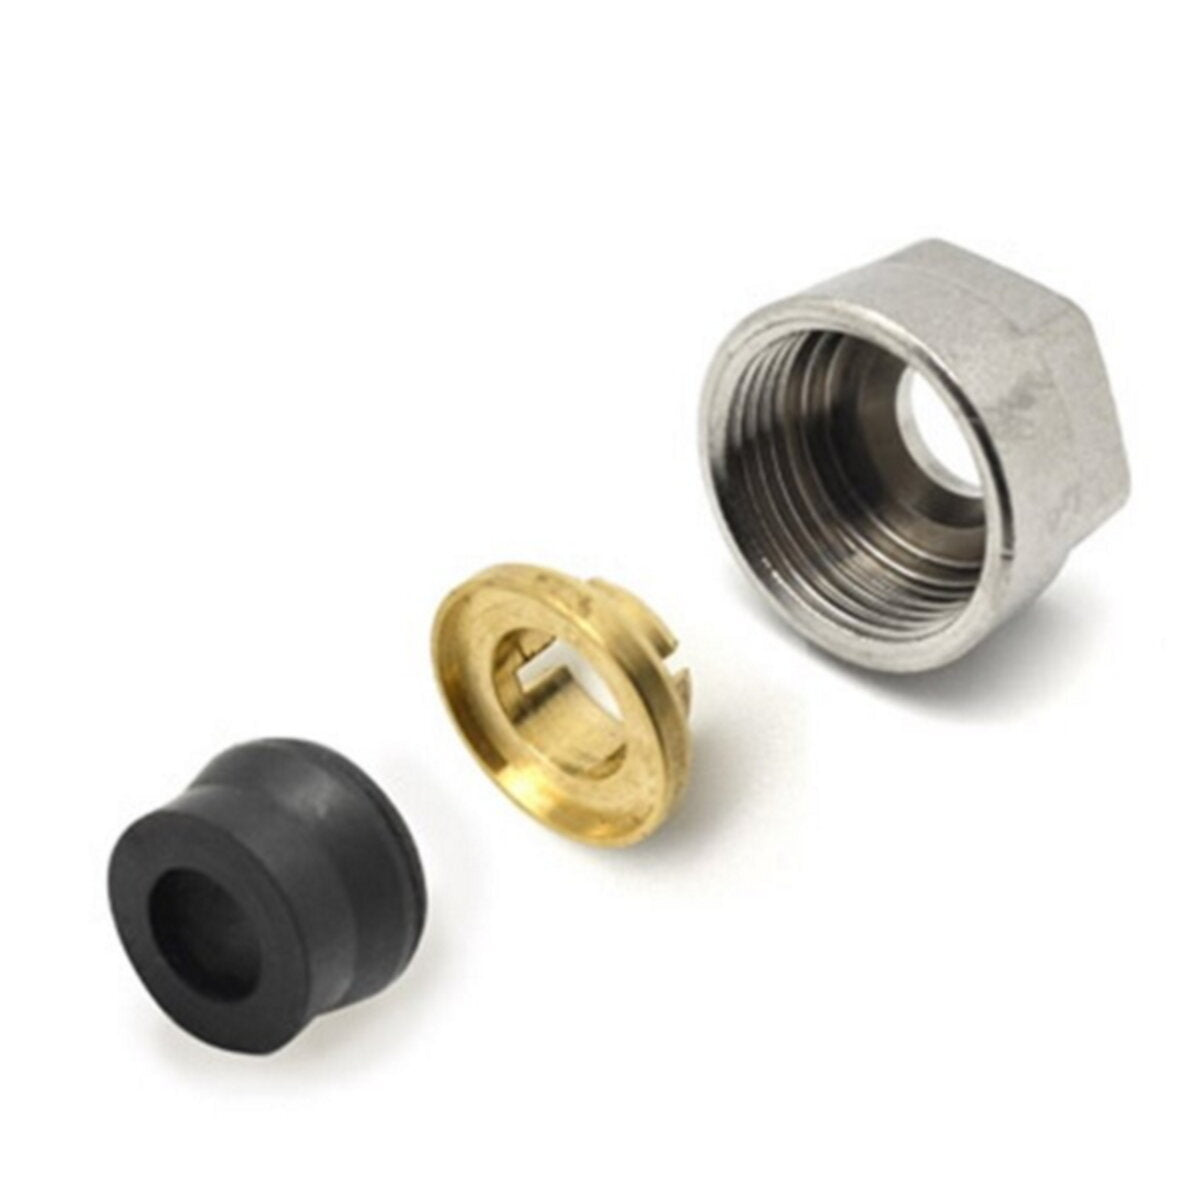 Rubber lockshield valve fitting for copper pipe 12mmx2 for Ercos lockshield valves